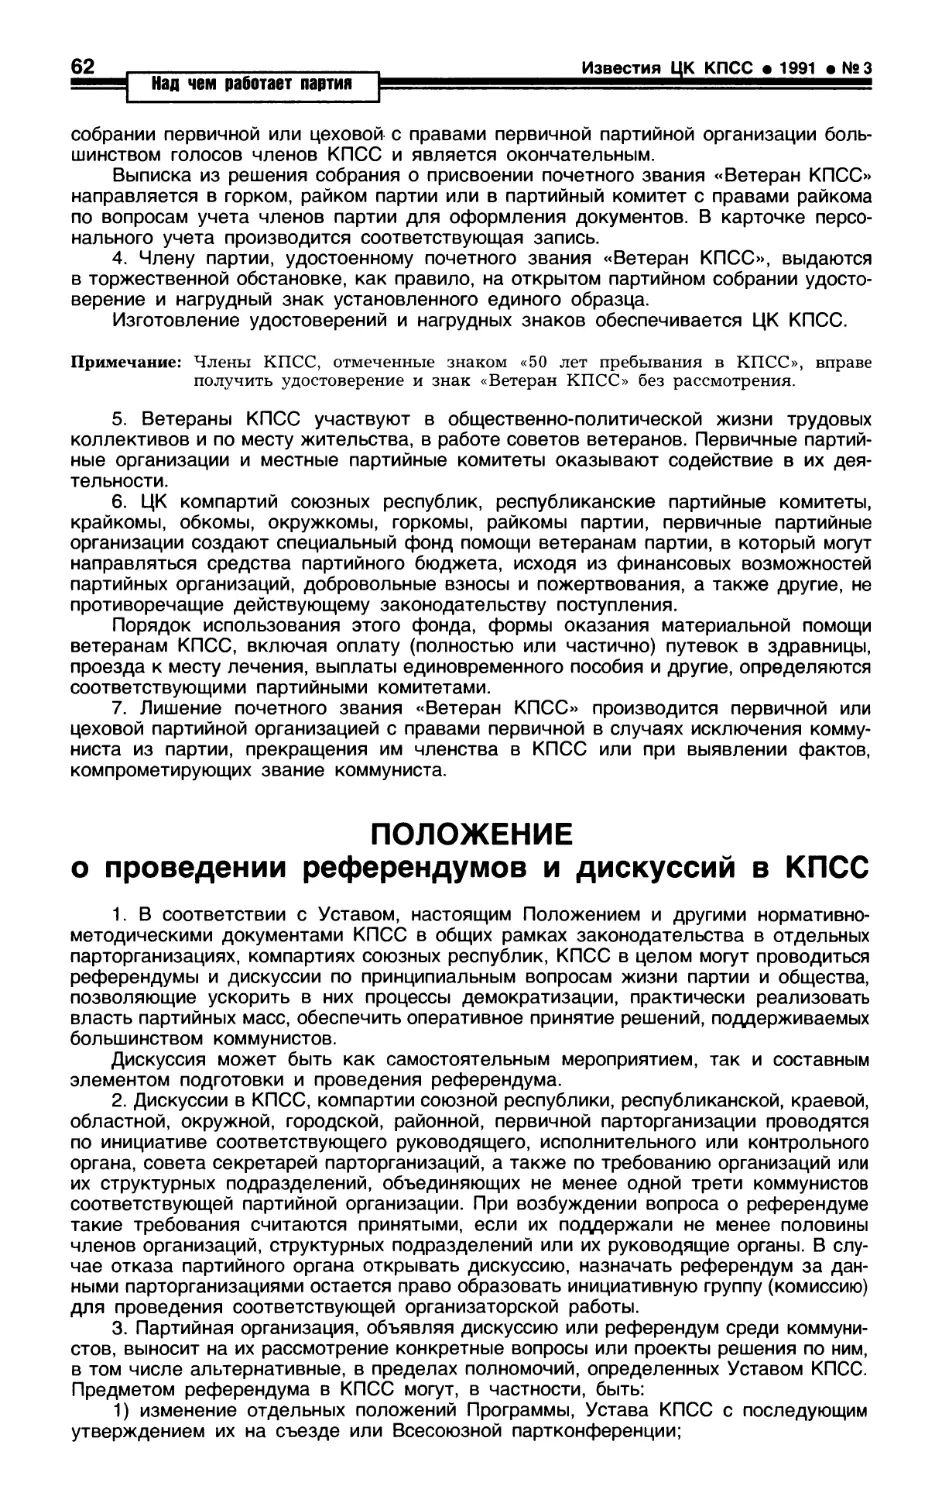 Положение о проведении референдумов и дискуссий в КПСС